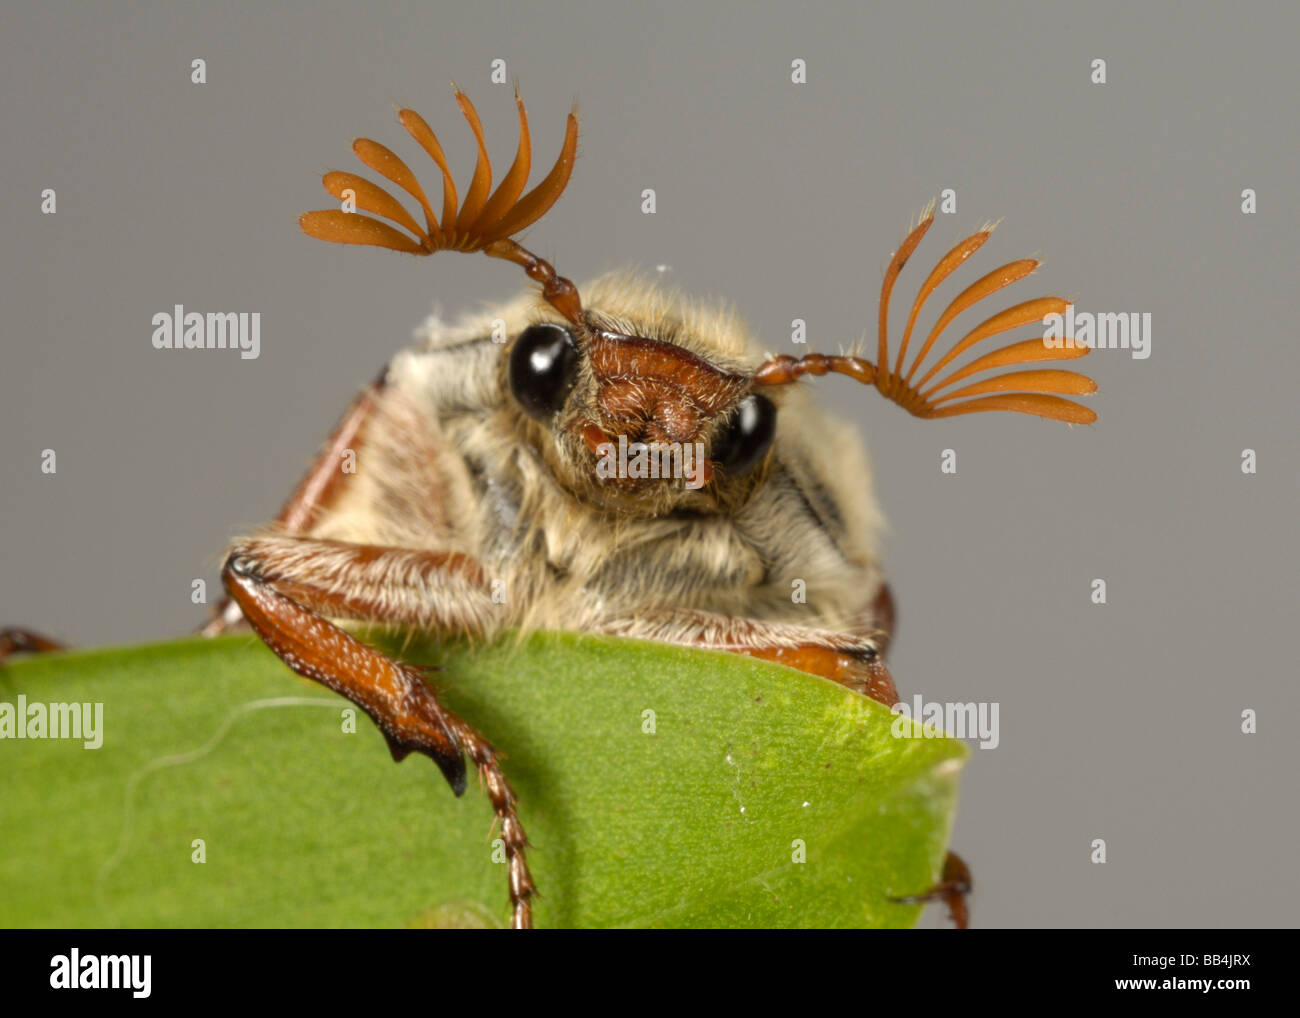 La testa e le antenne di un adulto cockchafer Melolontha melolontha o bug su una foglia Foto Stock